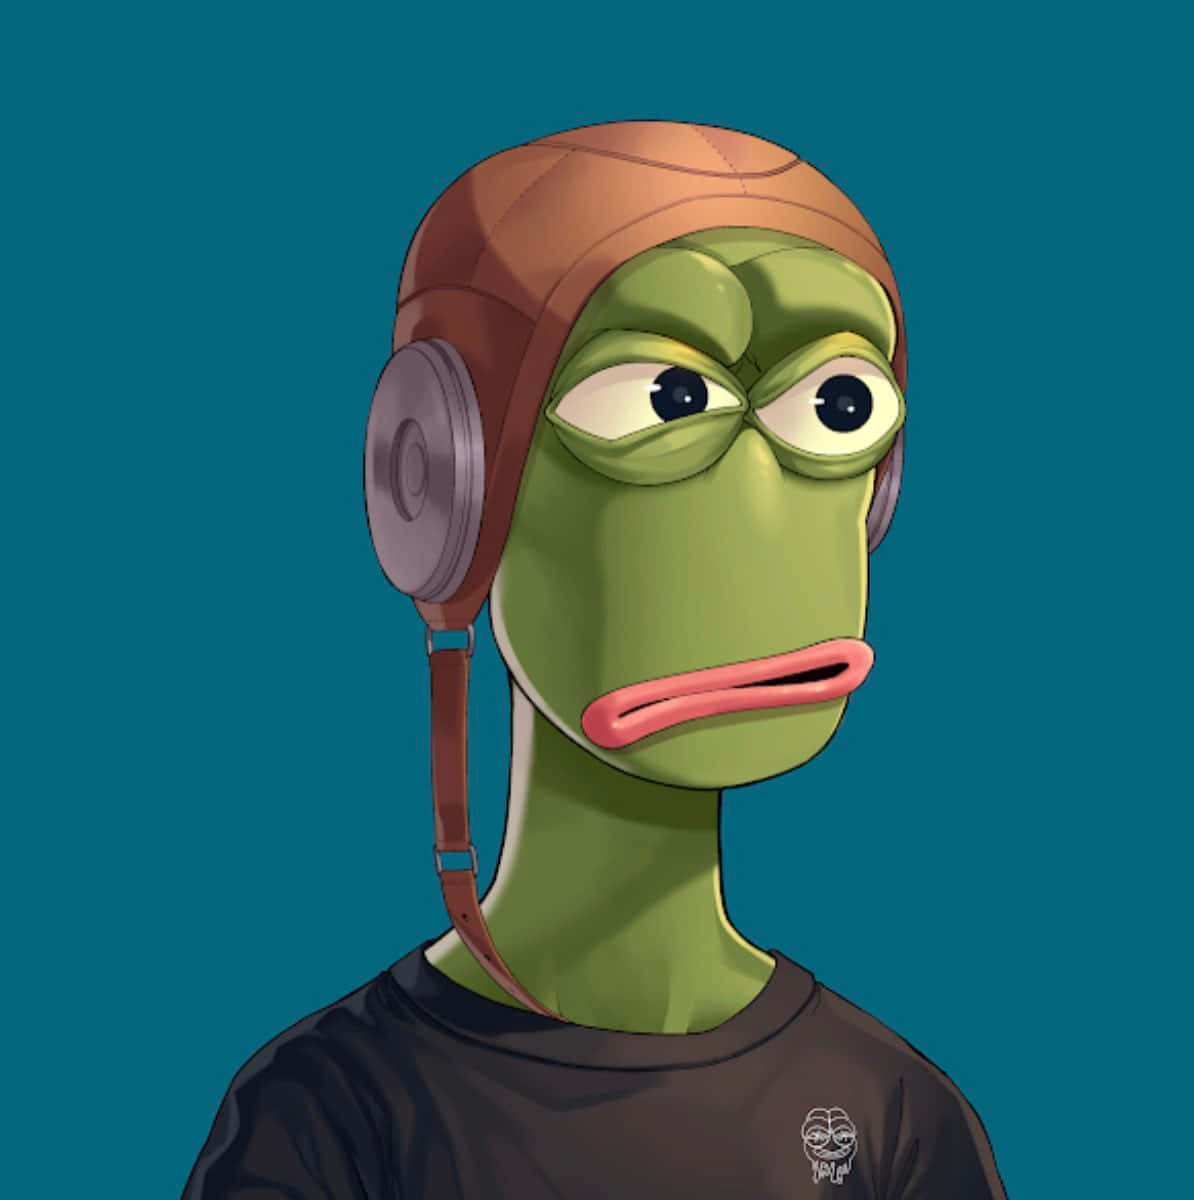 Divertenteimmagine Del Profilo Di Pepe The Frog Su Discord.